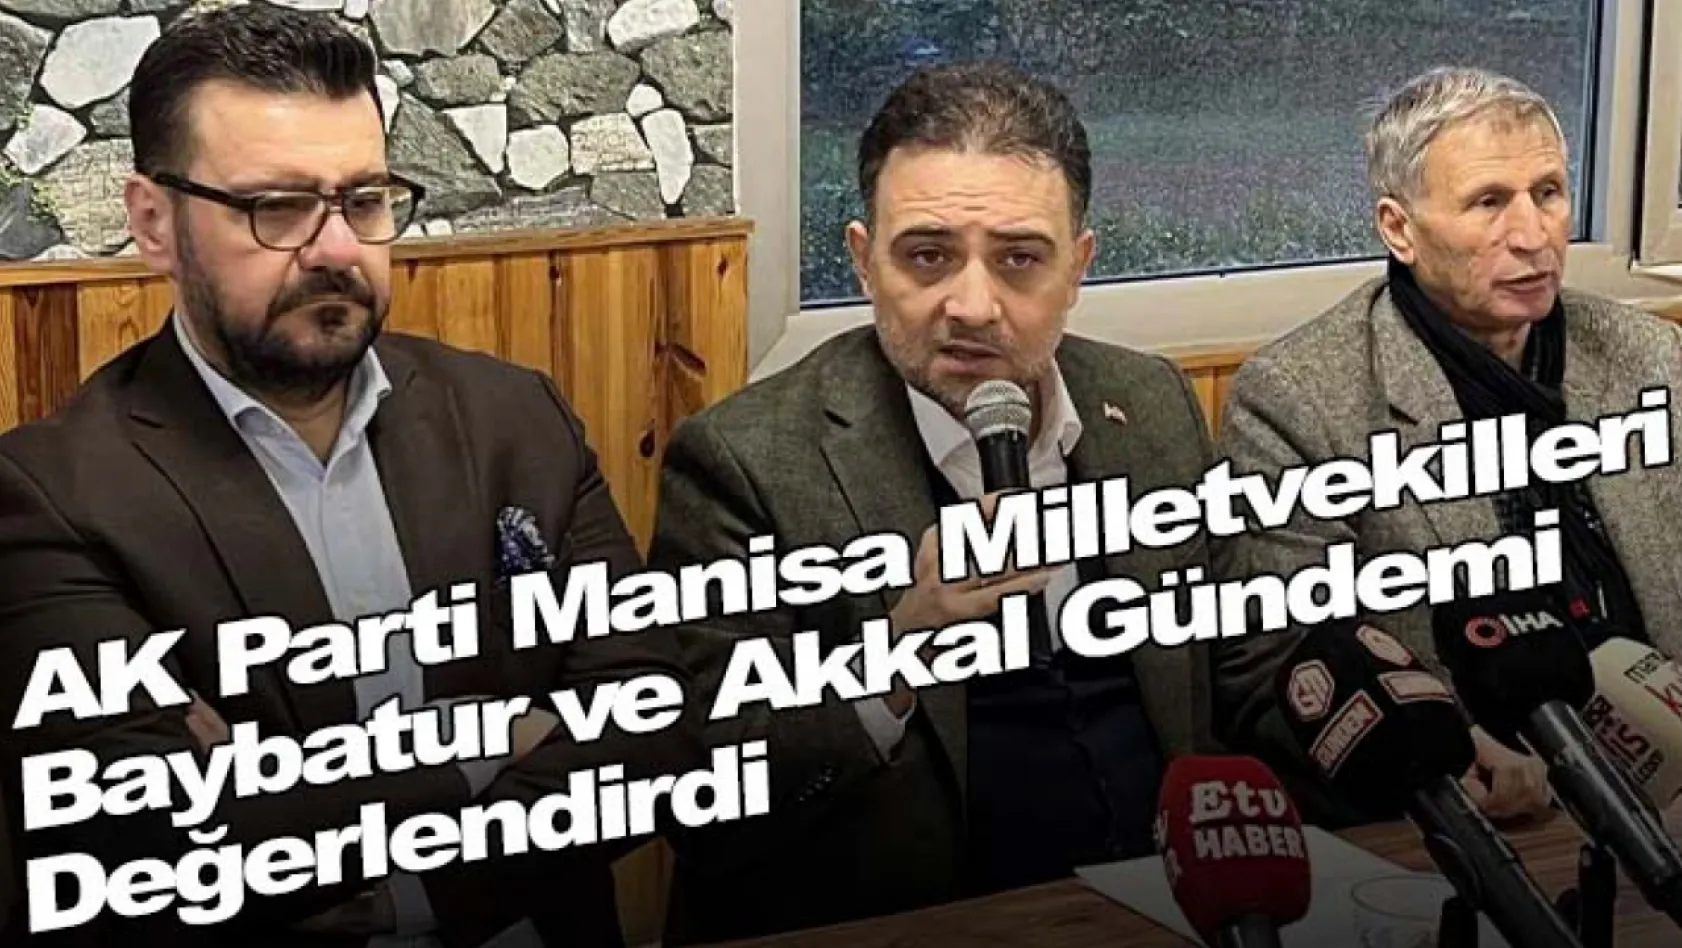 AK Parti Manisa milletvekilleri Baybatur ve Akkal gündemi değerlendirdi